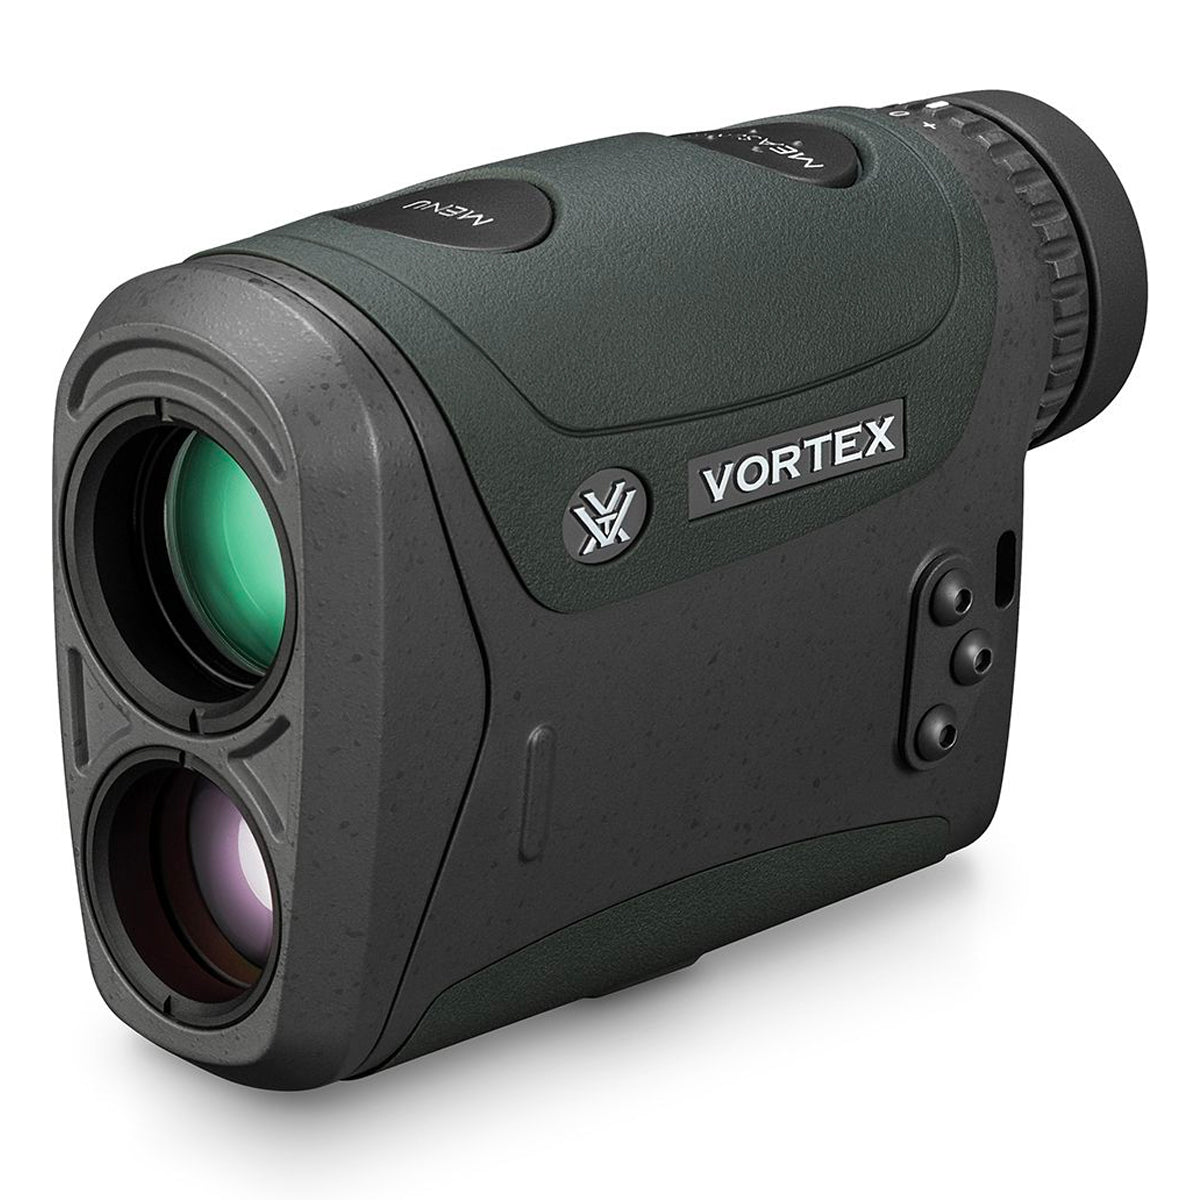 Vortex Razor HD 4000 Laser Rangefinder in Vortex Razor HD 4000 Laser Rangefinder by Vortex Optics | Optics - goHUNT Shop by GOHUNT | Vortex Optics - GOHUNT Shop